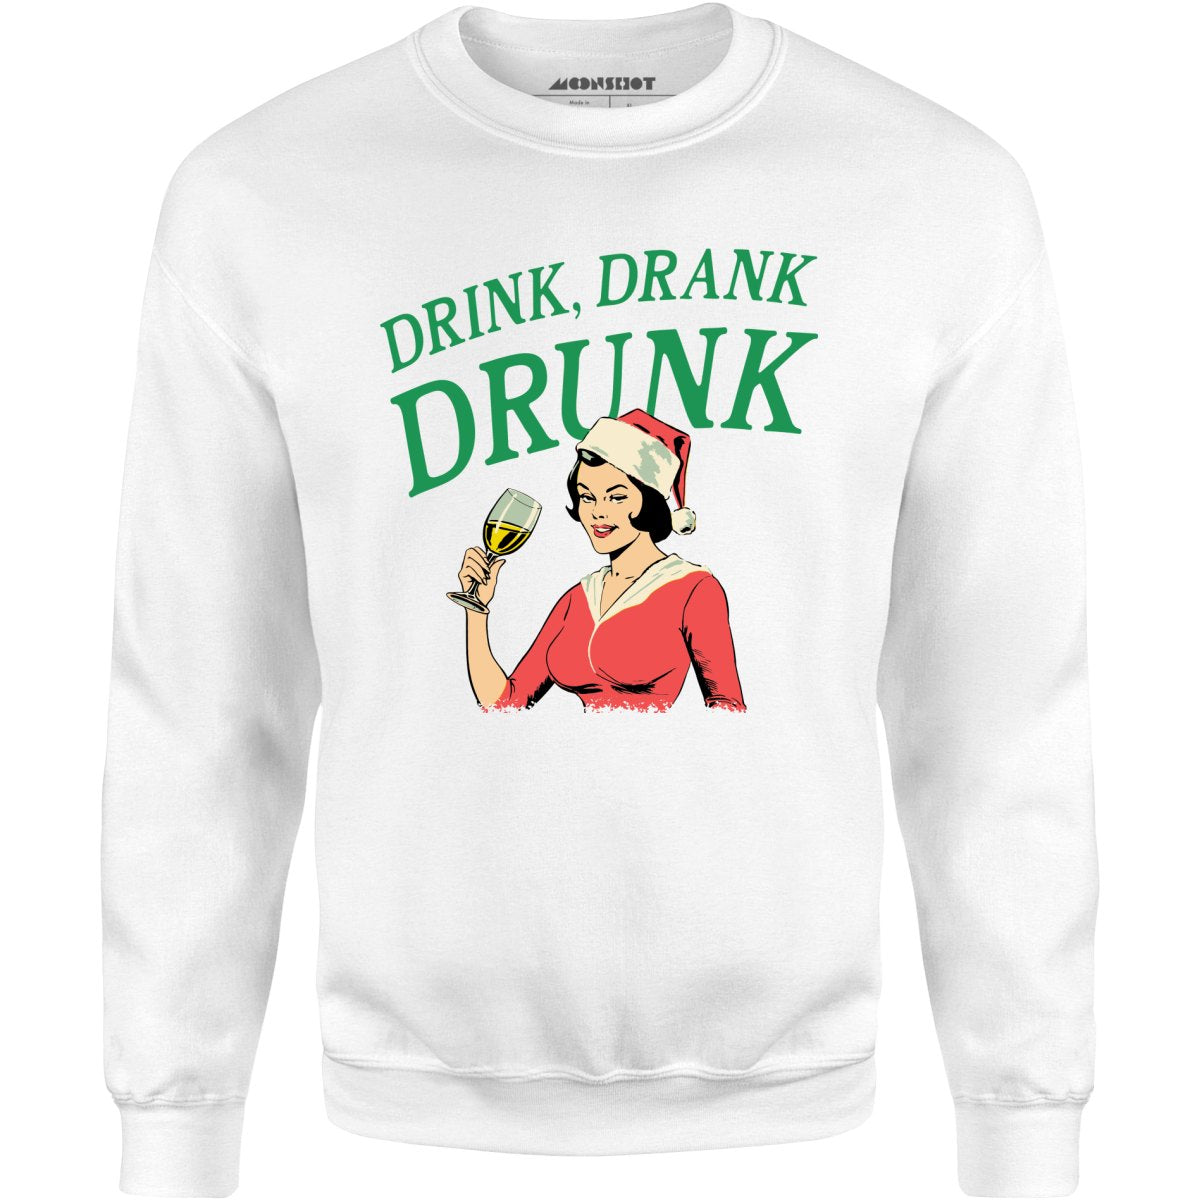 Drink, Drank, Drunk - Unisex Sweatshirt